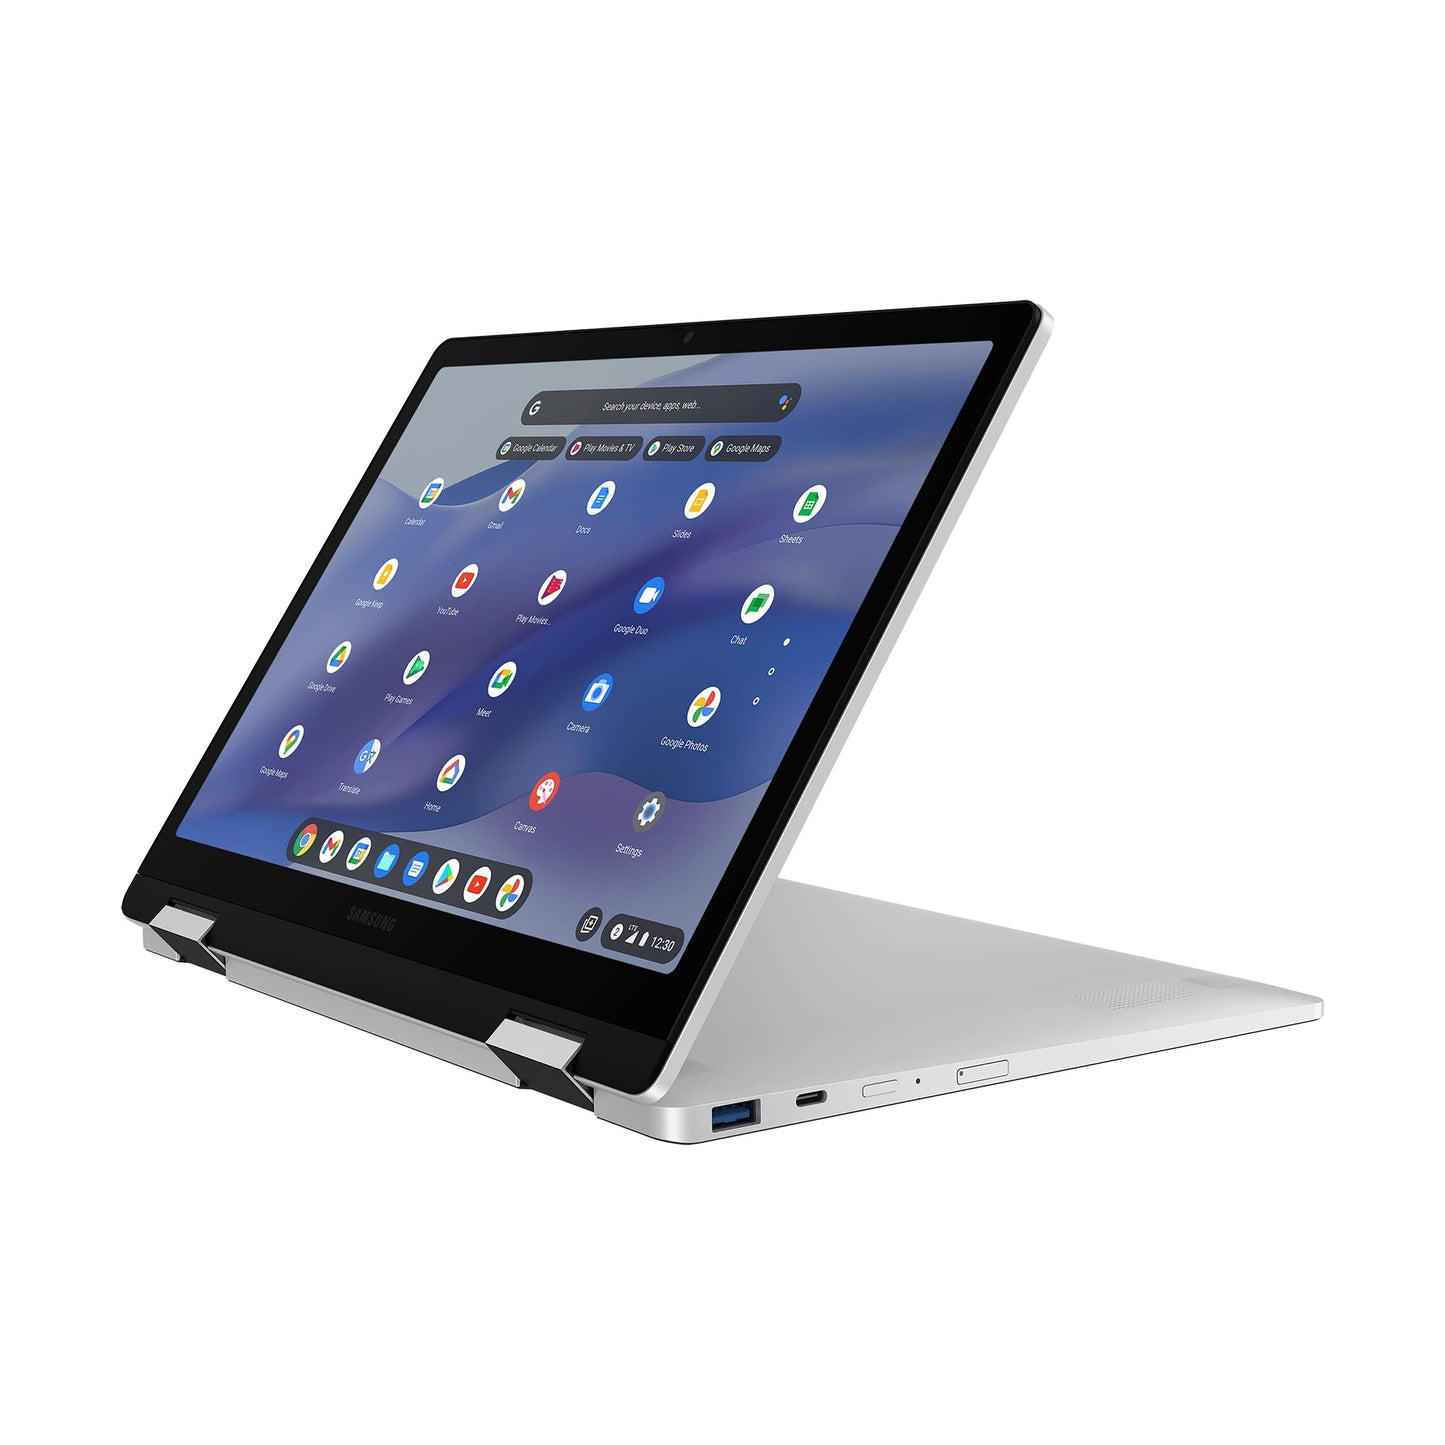 Samsung Galaxy Chromebook2 360 Laptop, 12.4 Inch, 4GB RAM, 64GB Storage, Celeron - Silver - Official